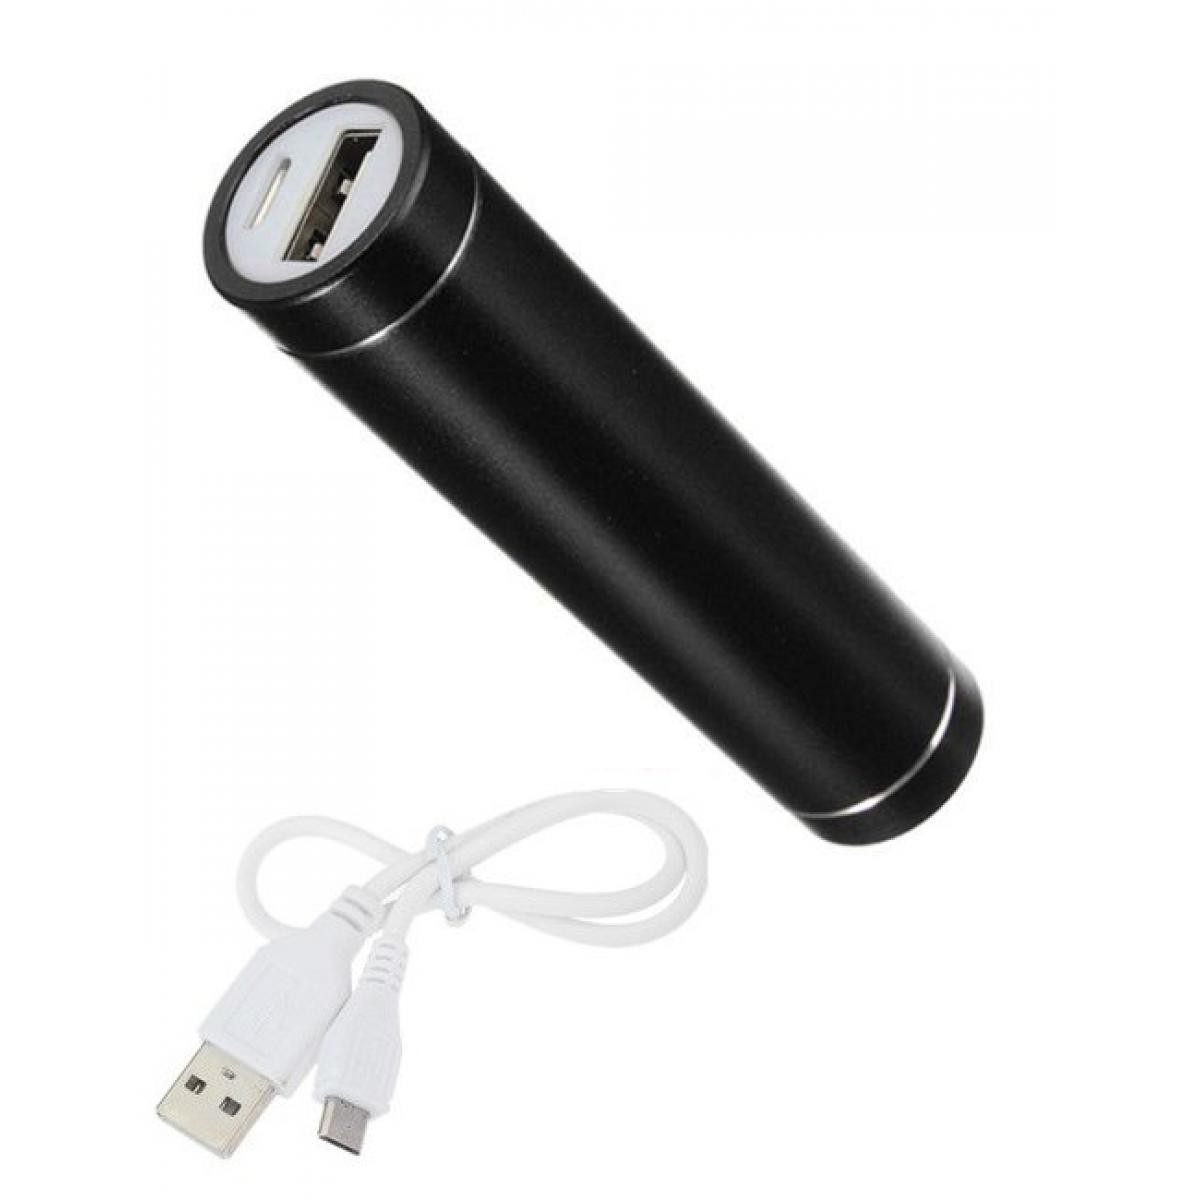 Shot - Batterie Chargeur Externe pour SAMSUNG Galaxy S10+ Power Bank 2600mAh avec Cable USB/Mirco USB Secours Telephone (NOIR) - Chargeur secteur téléphone